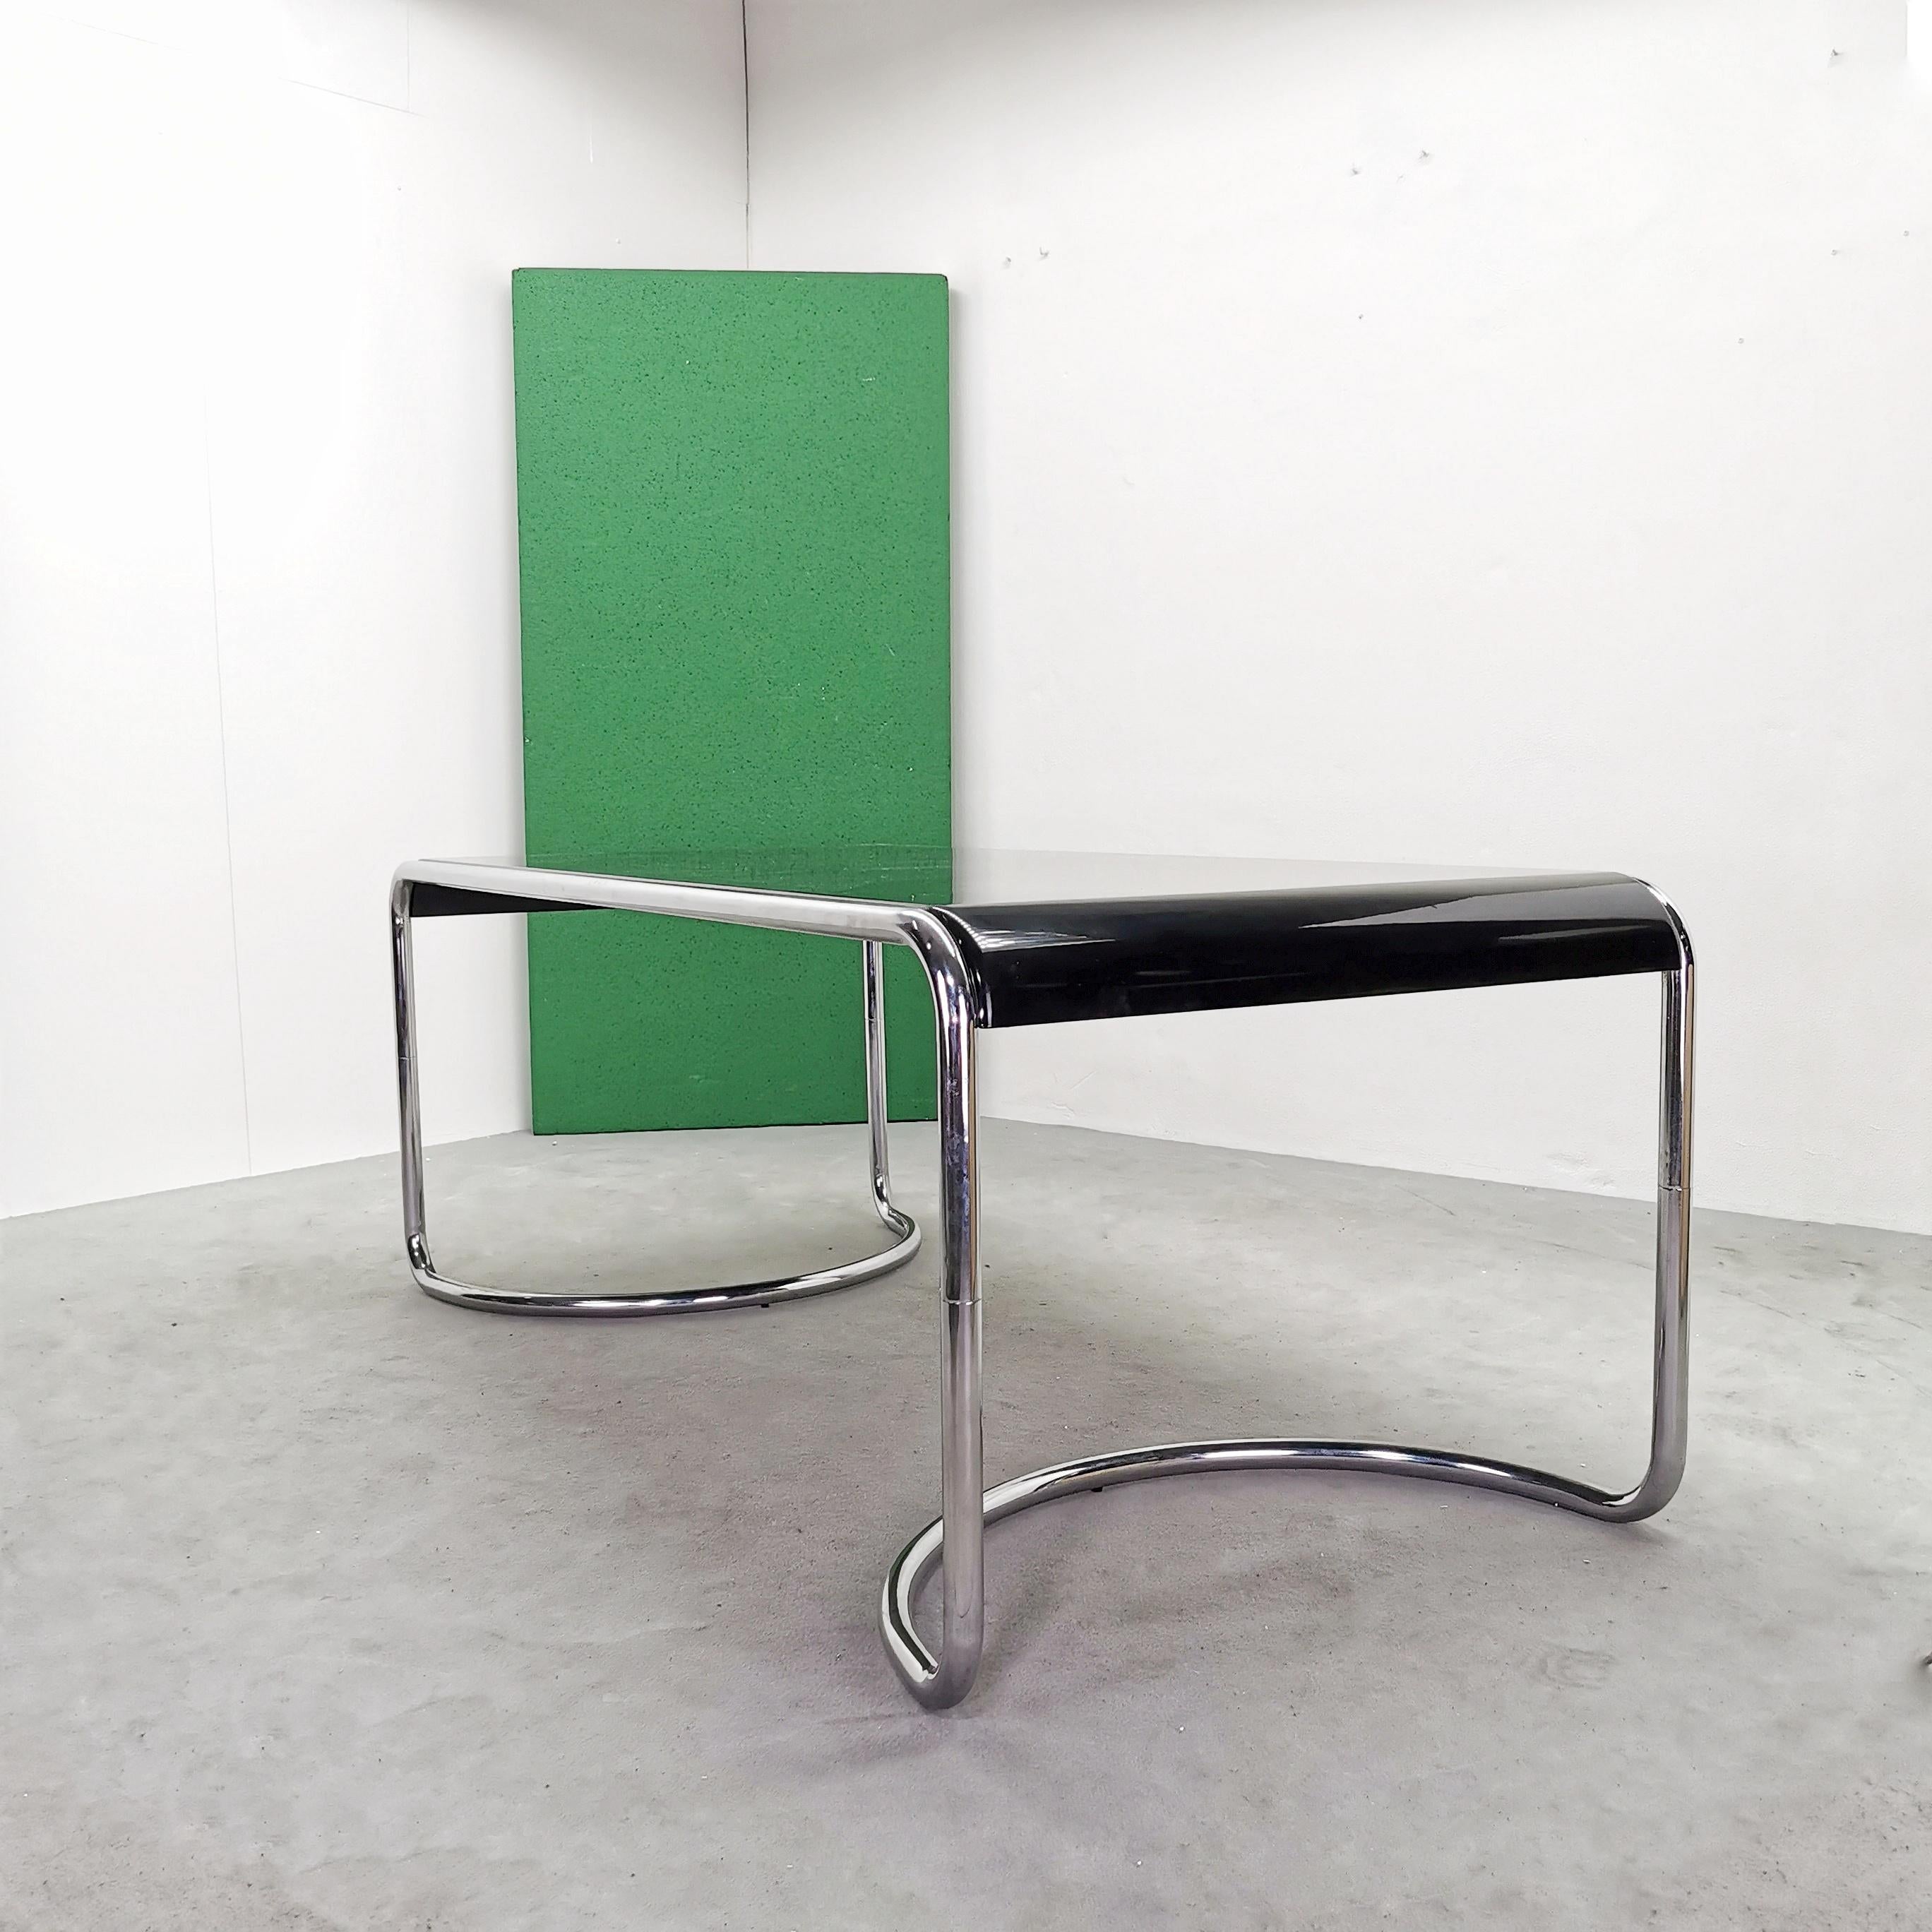 Rare table de bureau modèle Febo conçue en 1970 par G. Stoppino pour Driade. Structure tubulaire chromée et plateau en bois courbé laqué. 
La table est en très bon état
la structure chromée ne présente aucun défaut
la partie supérieure présente